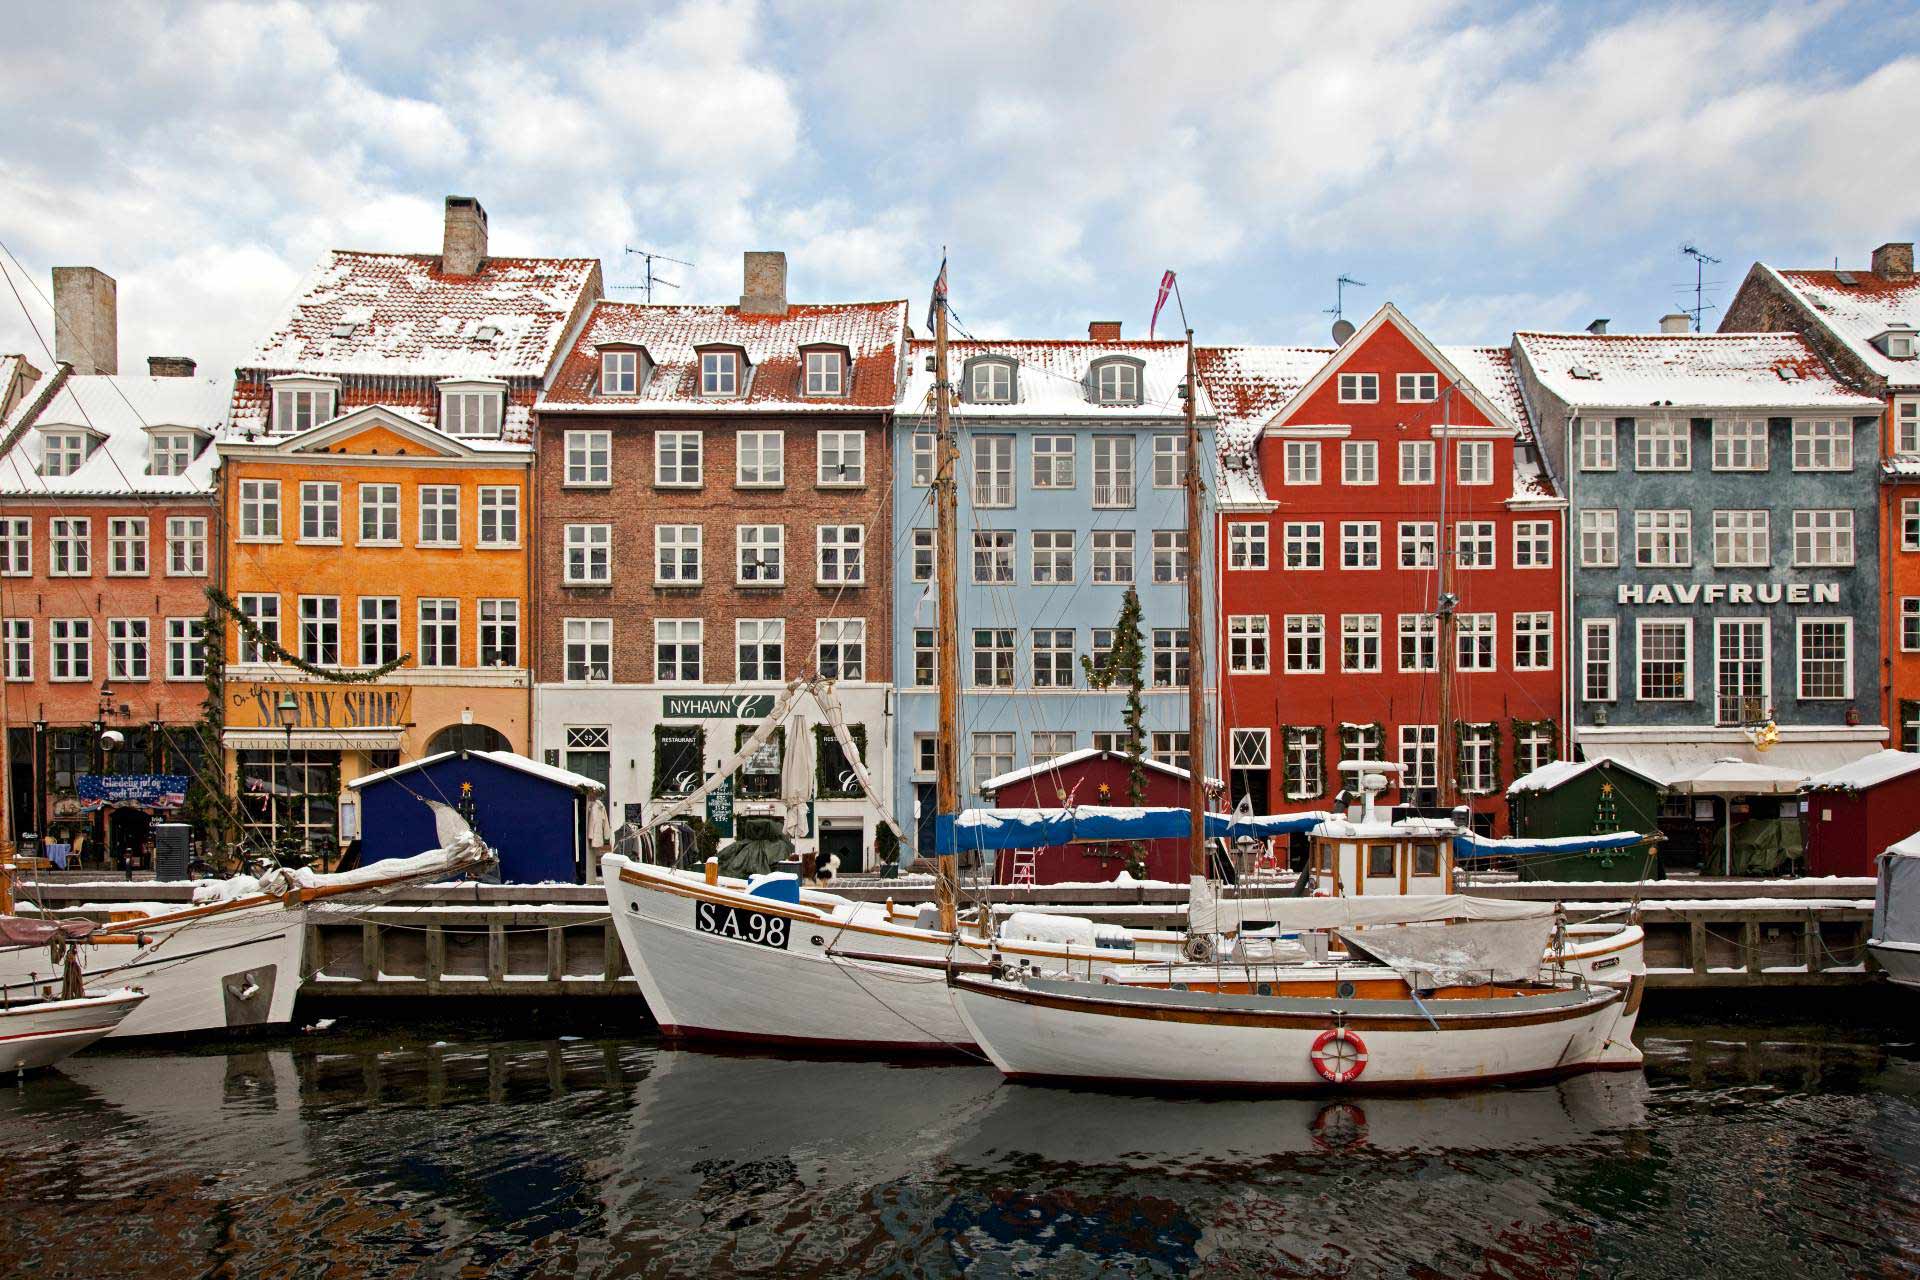 The Nyhavn harbour area in Copenhagen © Kim Wyon